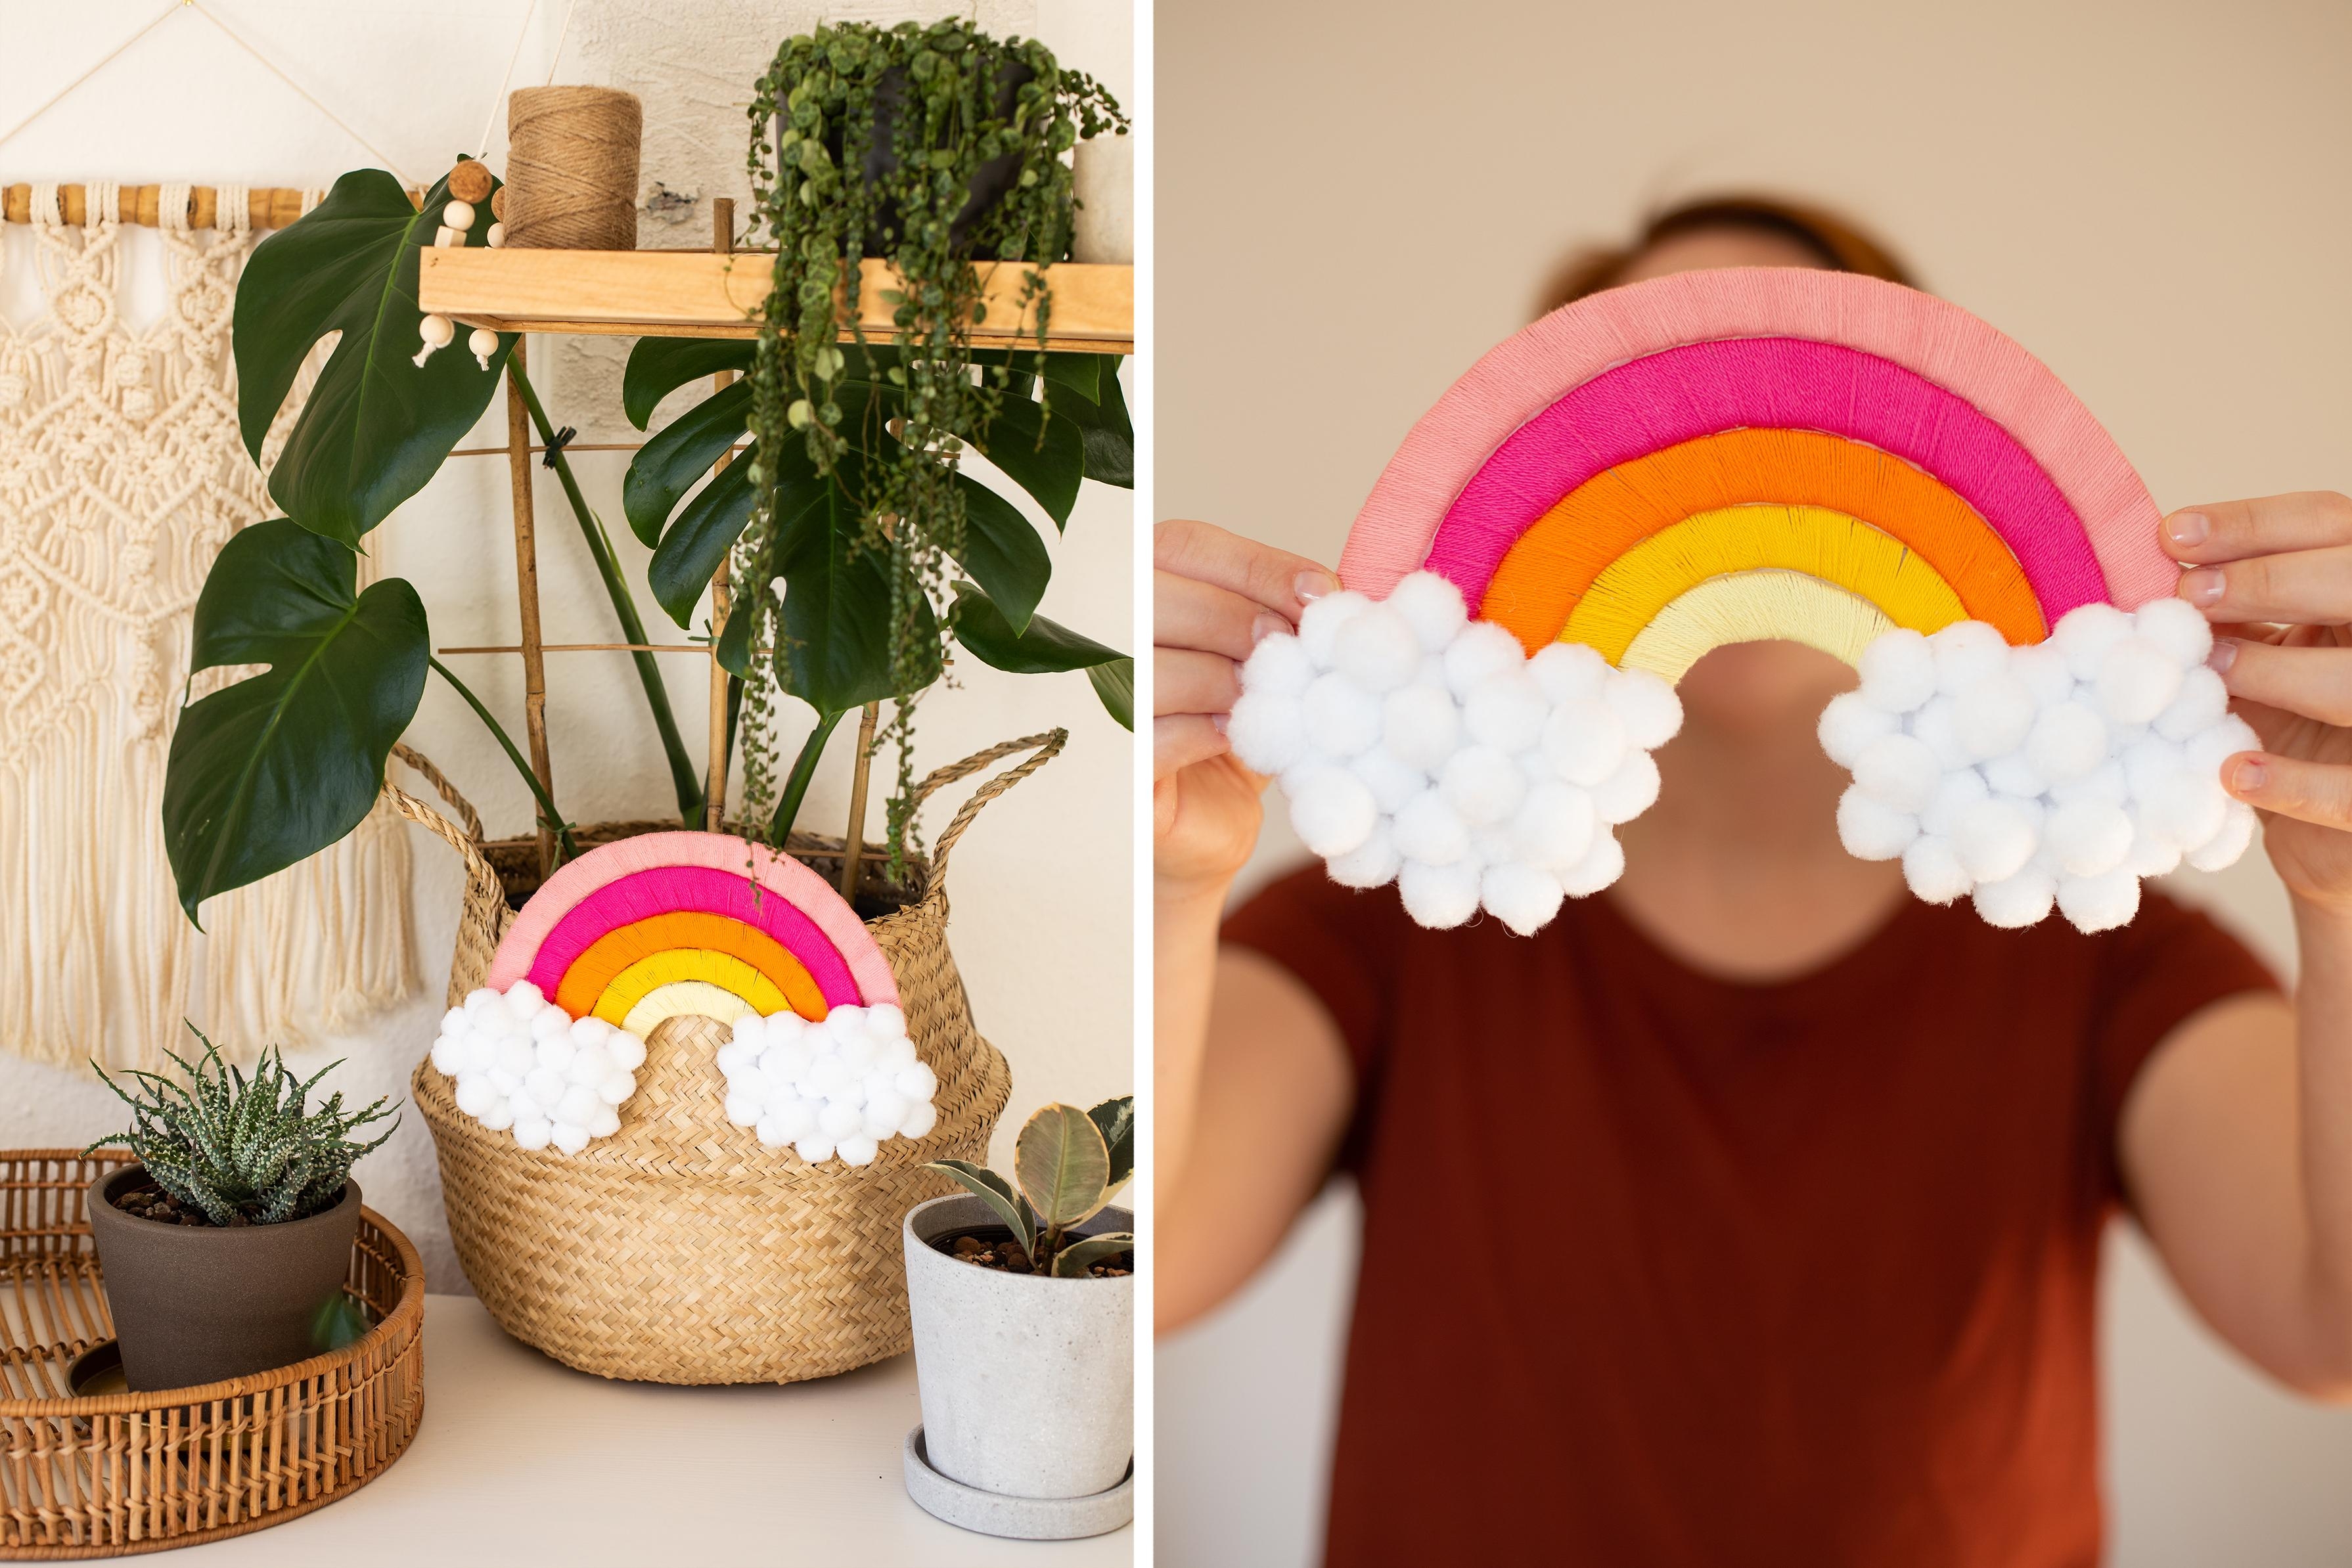 Basteln mit Kindern – DIY Regenbogen aus Pappe und Wolle
#wiebkeliebtdiy #regenbogen #bastelnmitkindern